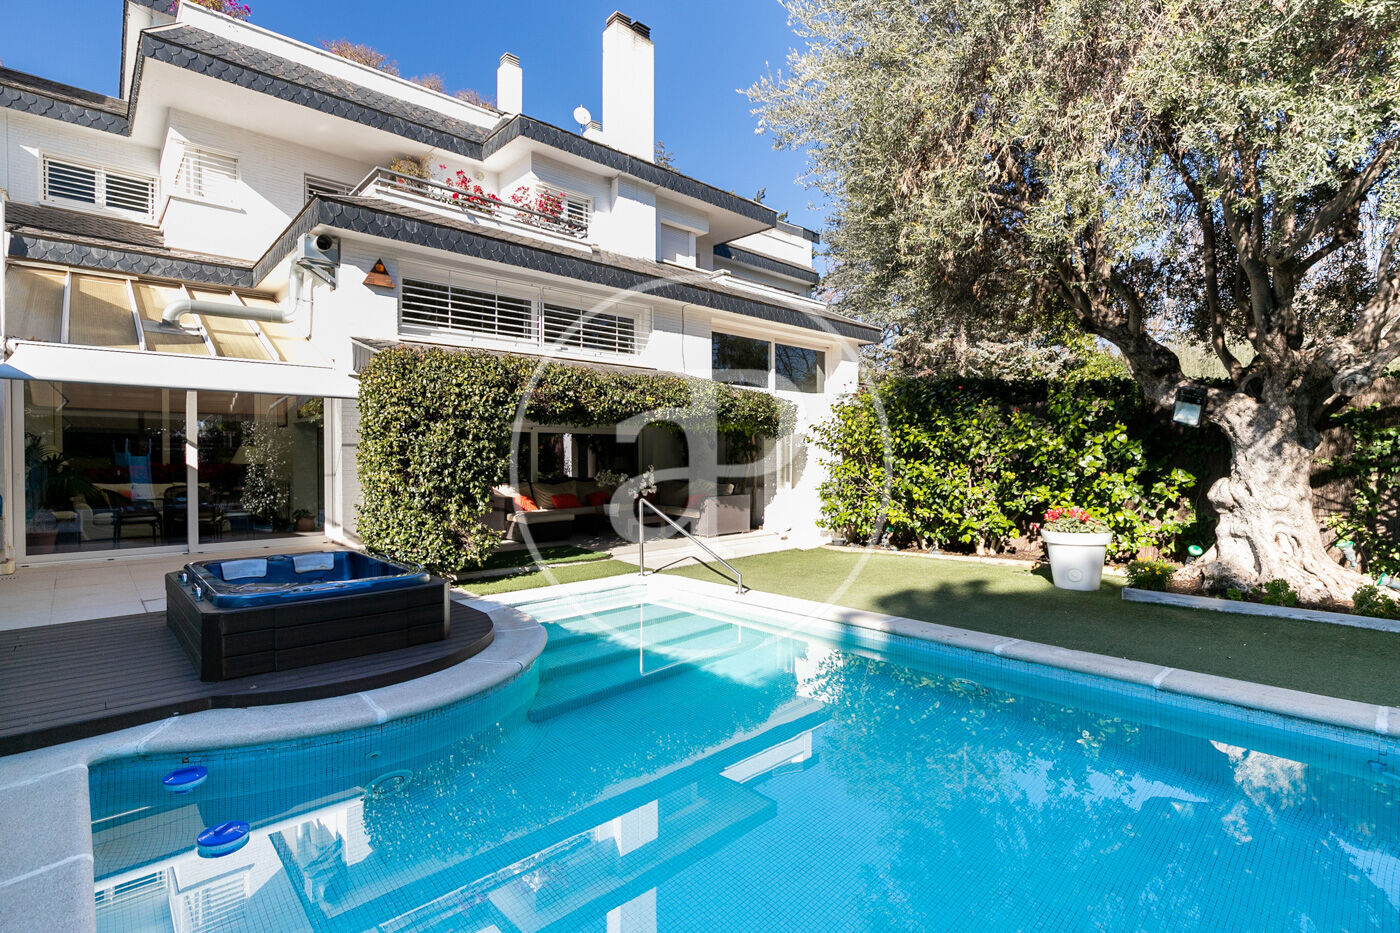 Casa unifamiliar adosada en venta con piscina privada en Pedralbes